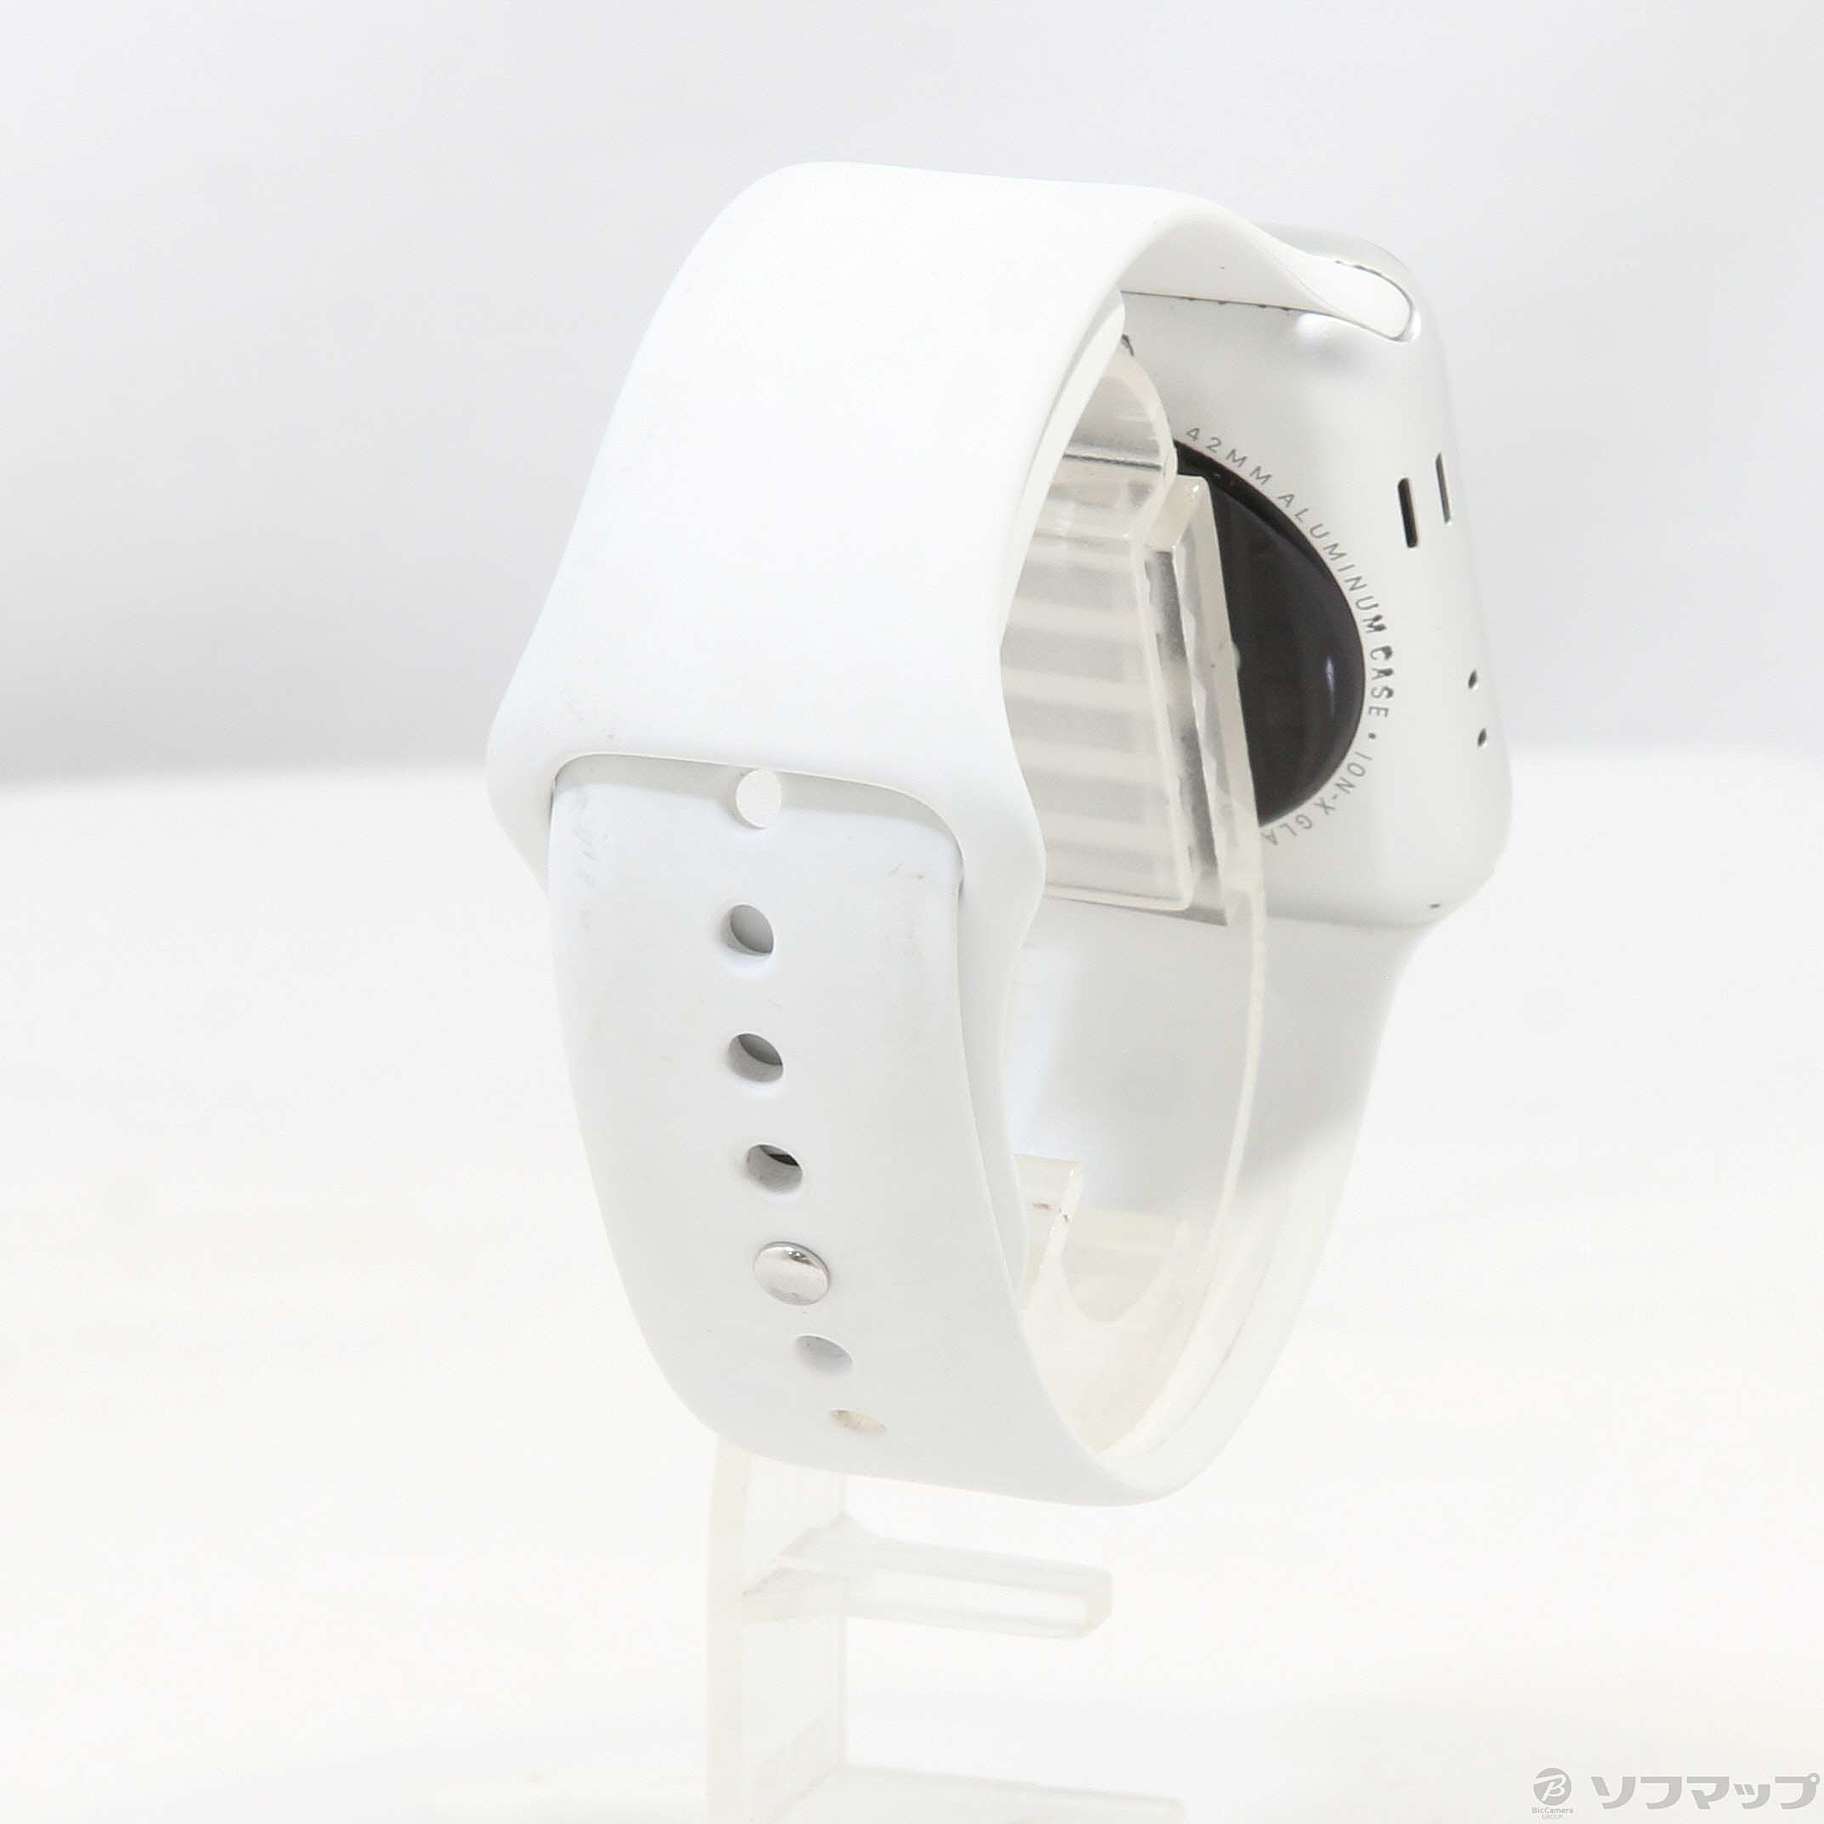 Apple Watch Series 3 GPS 42mm シルバーアルミニウムケース ホワイトスポーツバンド